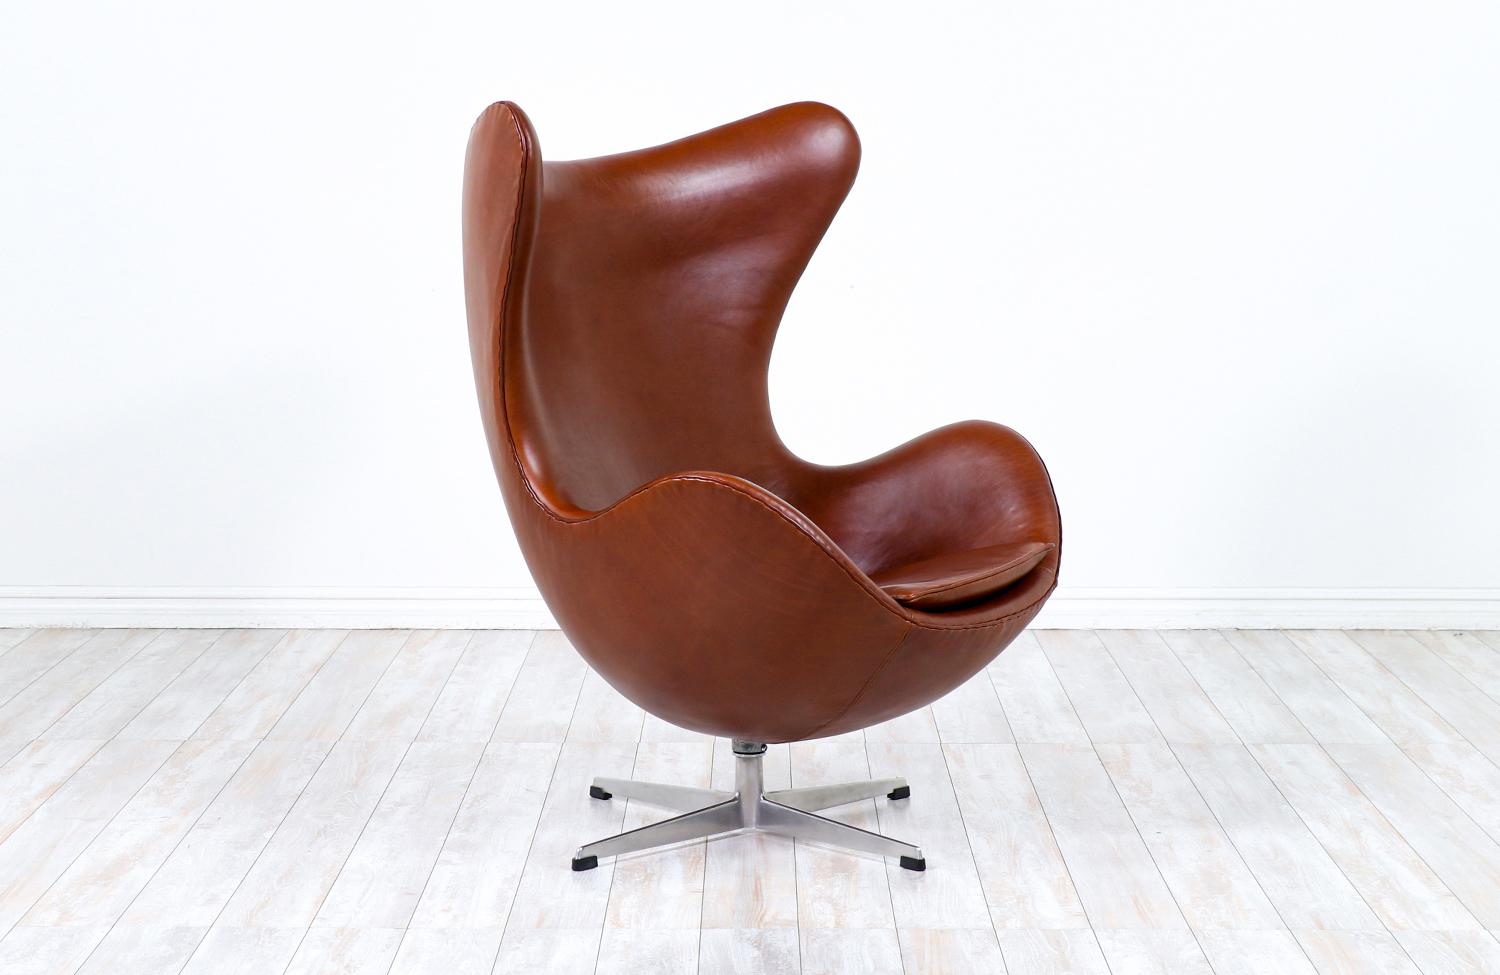 Conçue à l'origine pour l'hôtel SAS Royal de Copenhague en 1958, la chaise Egg est devenue l'un des modèles les plus acclamés du designer de meubles danois Arne Jacobsen. Ce design emblématique se compose d'une coque en fibre de verre, recouverte